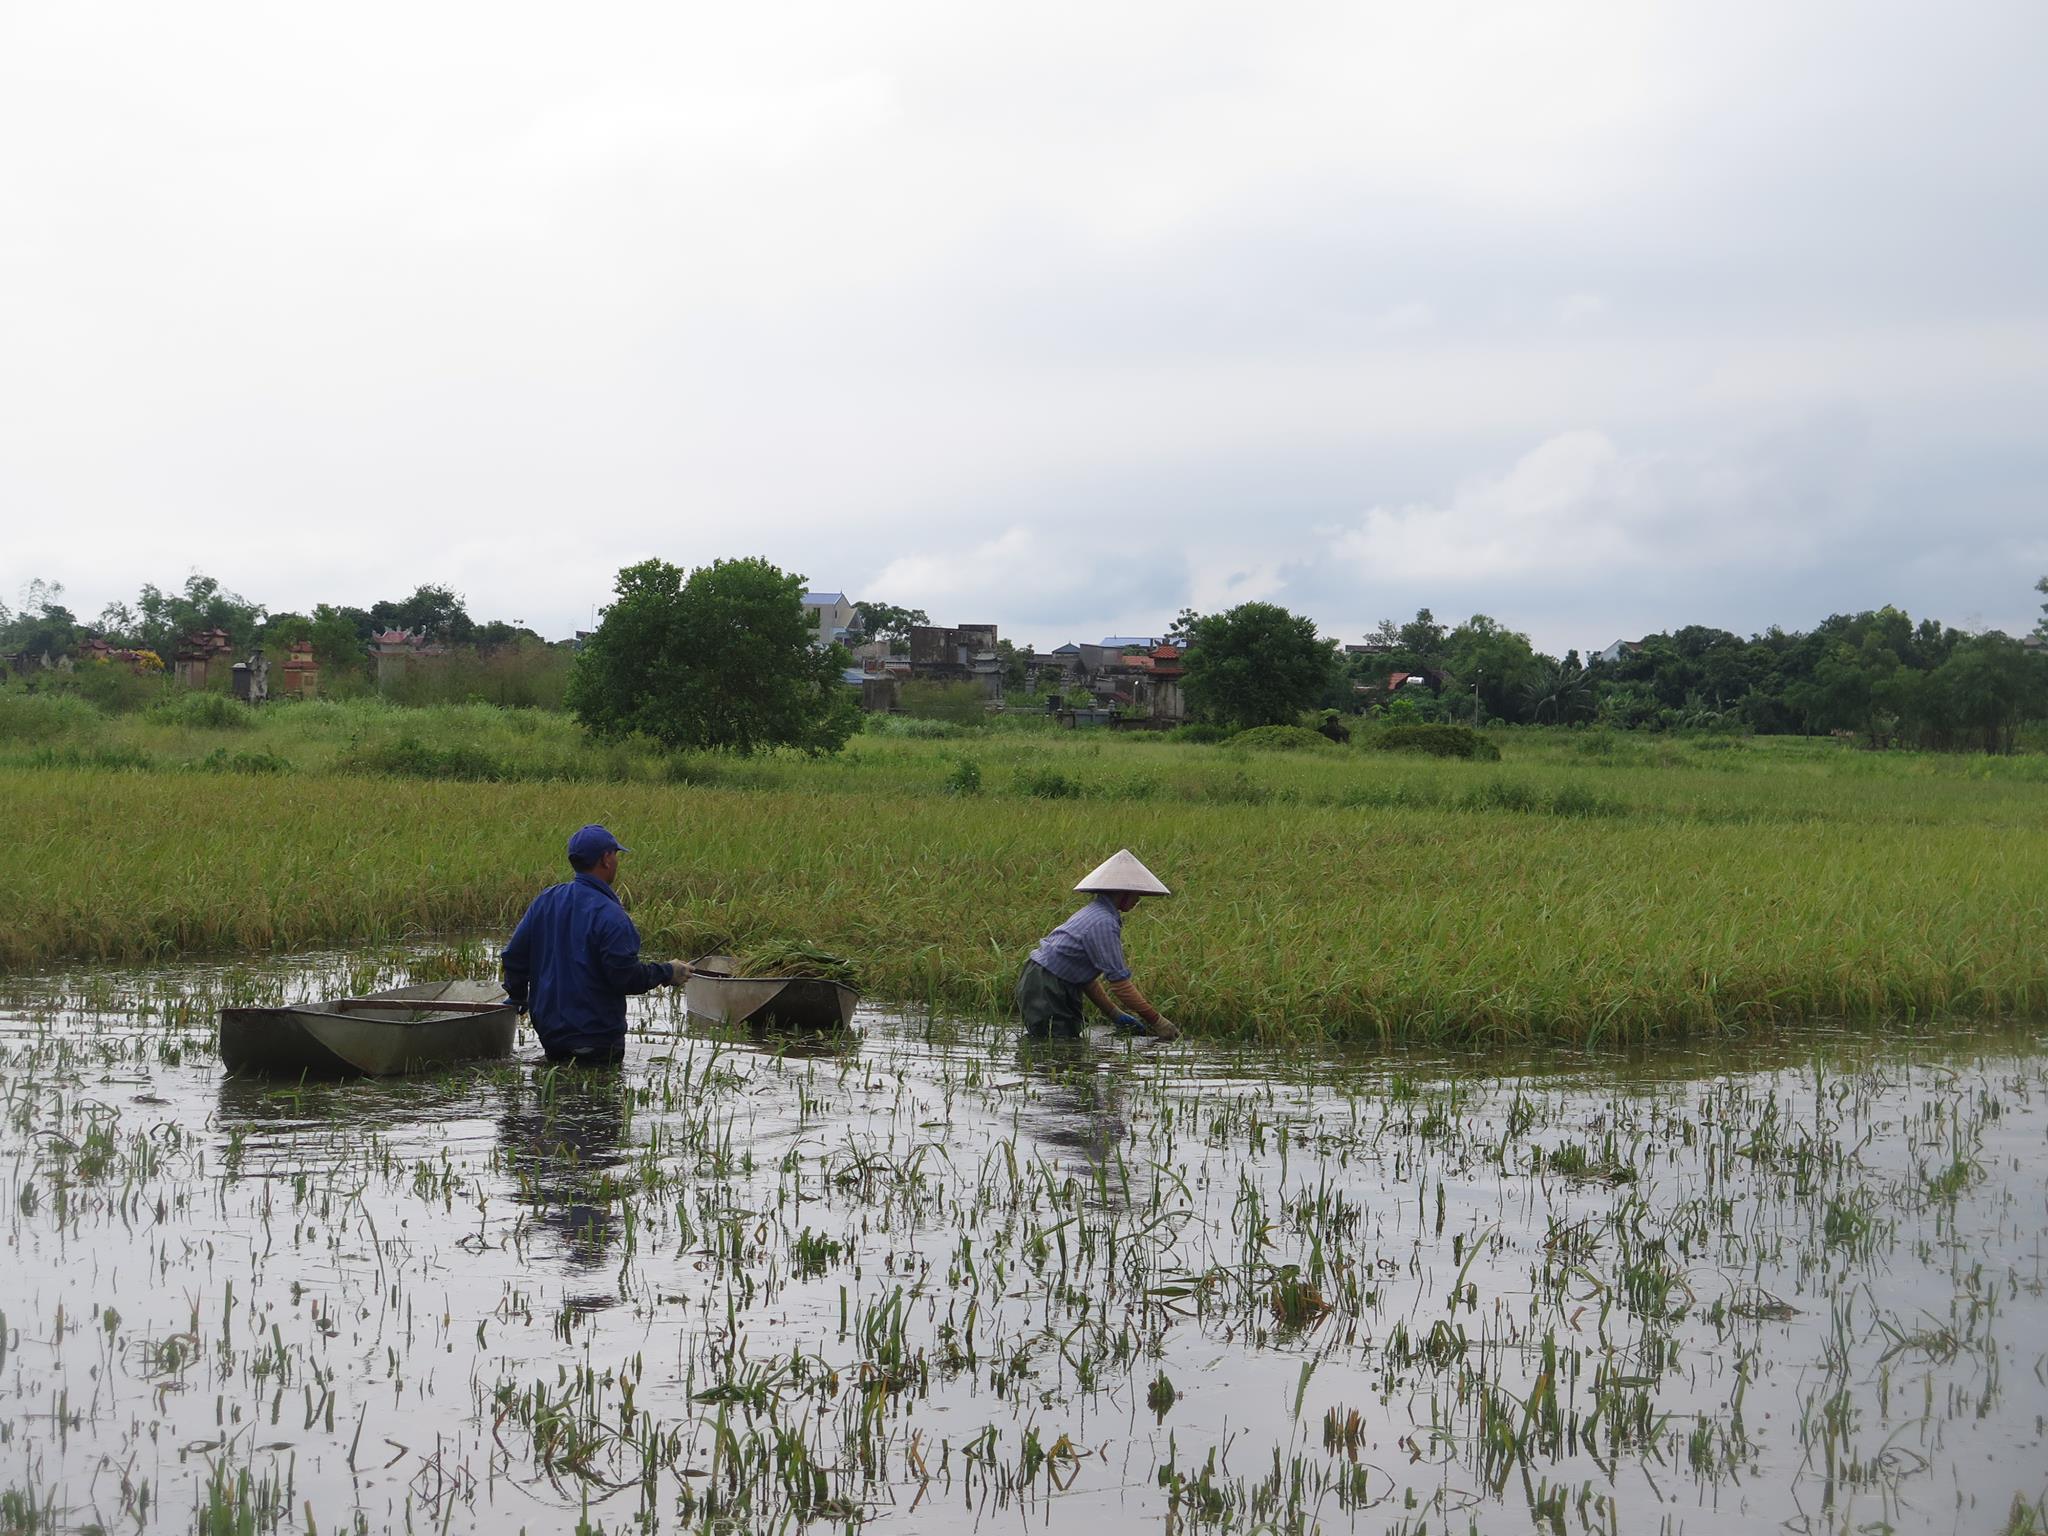 Nam Định: Chất vấn ‘căng’ chuyện mất mùa, ngập lụt